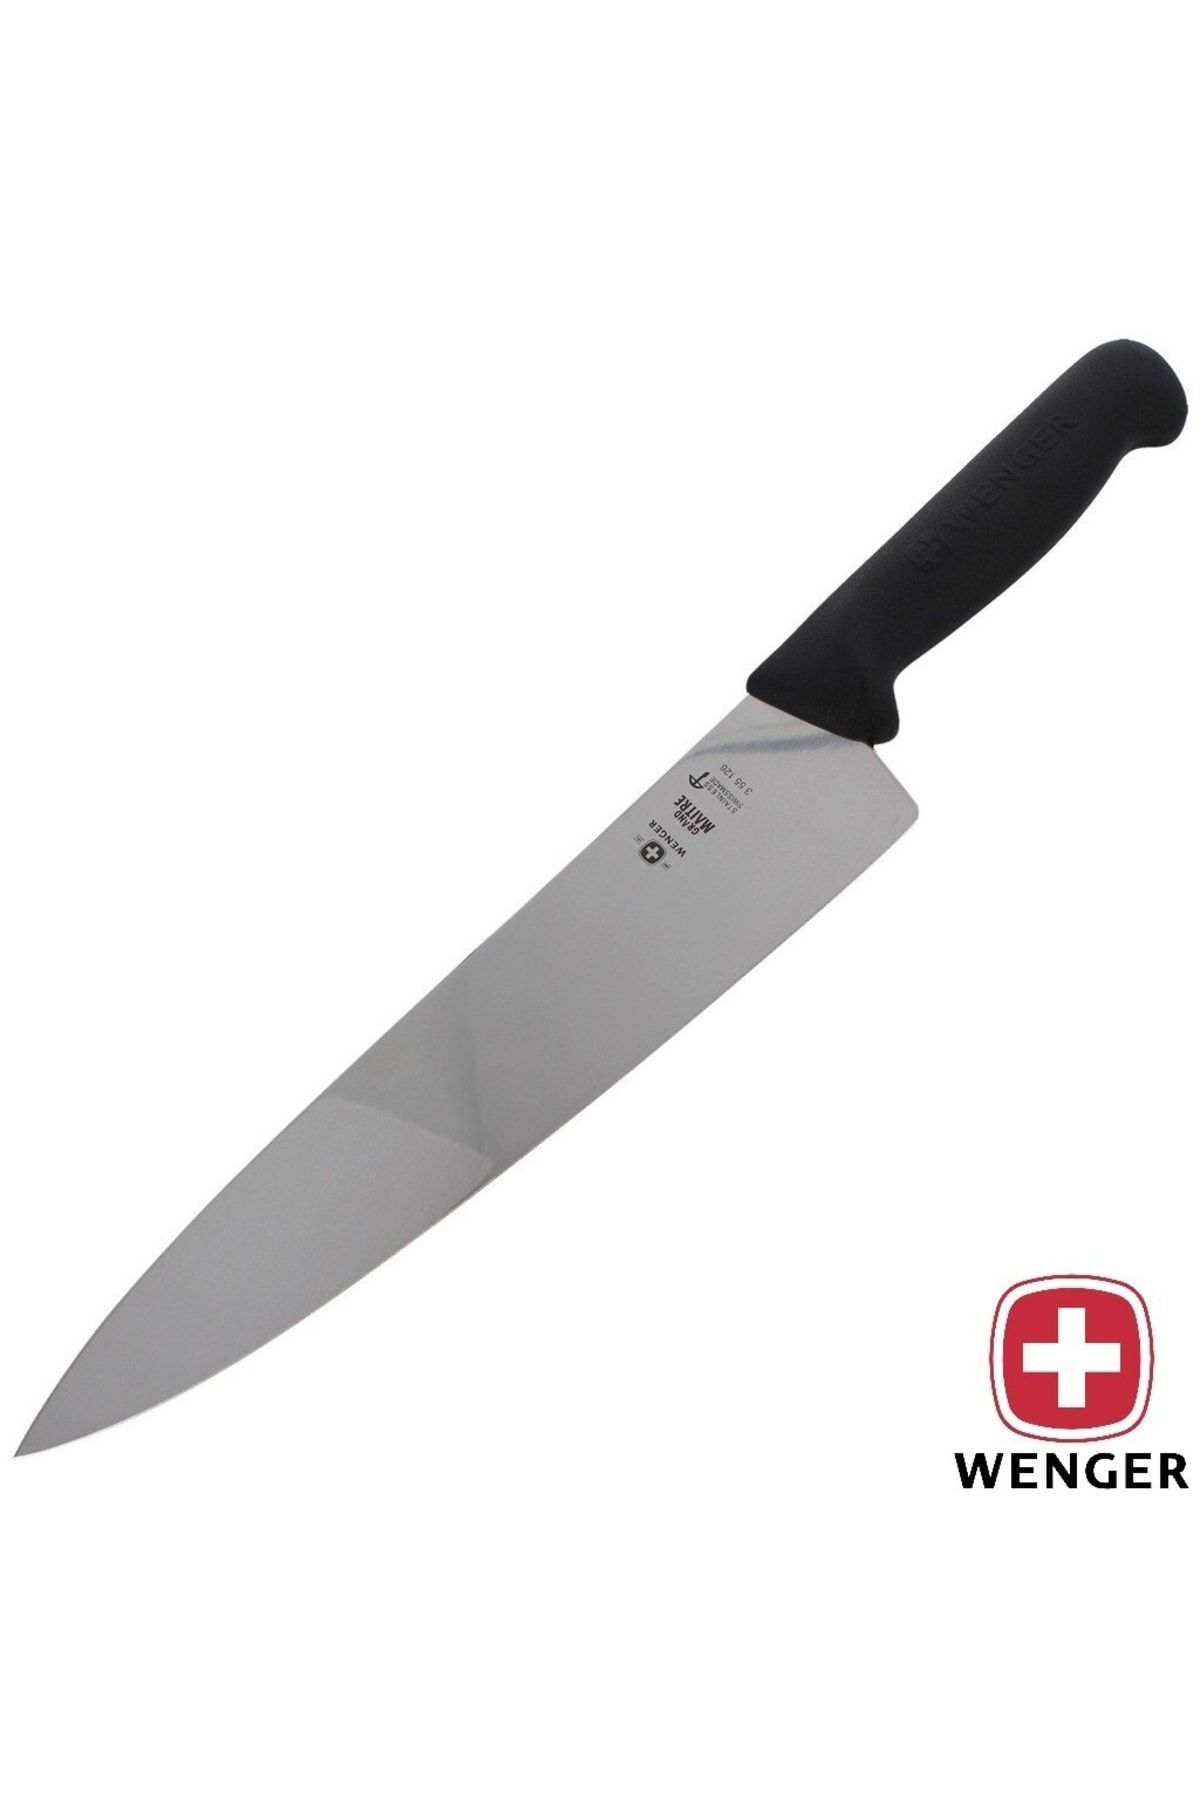 Wenger 355126 Işviçre Malı Mutfak Bıçağı Geniş Ağızlı Şef Bıçağı Profesyonel Chef Bıçak 26cm